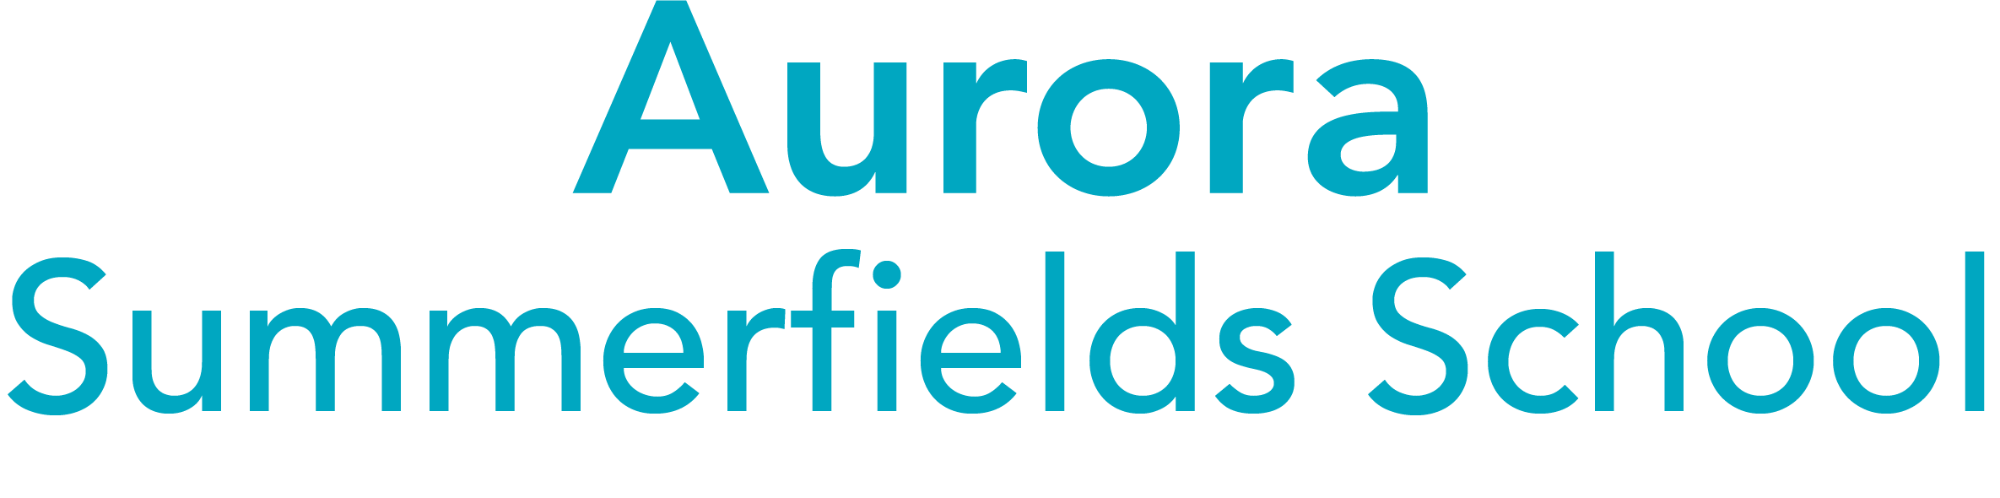 Aurora Summerfields School